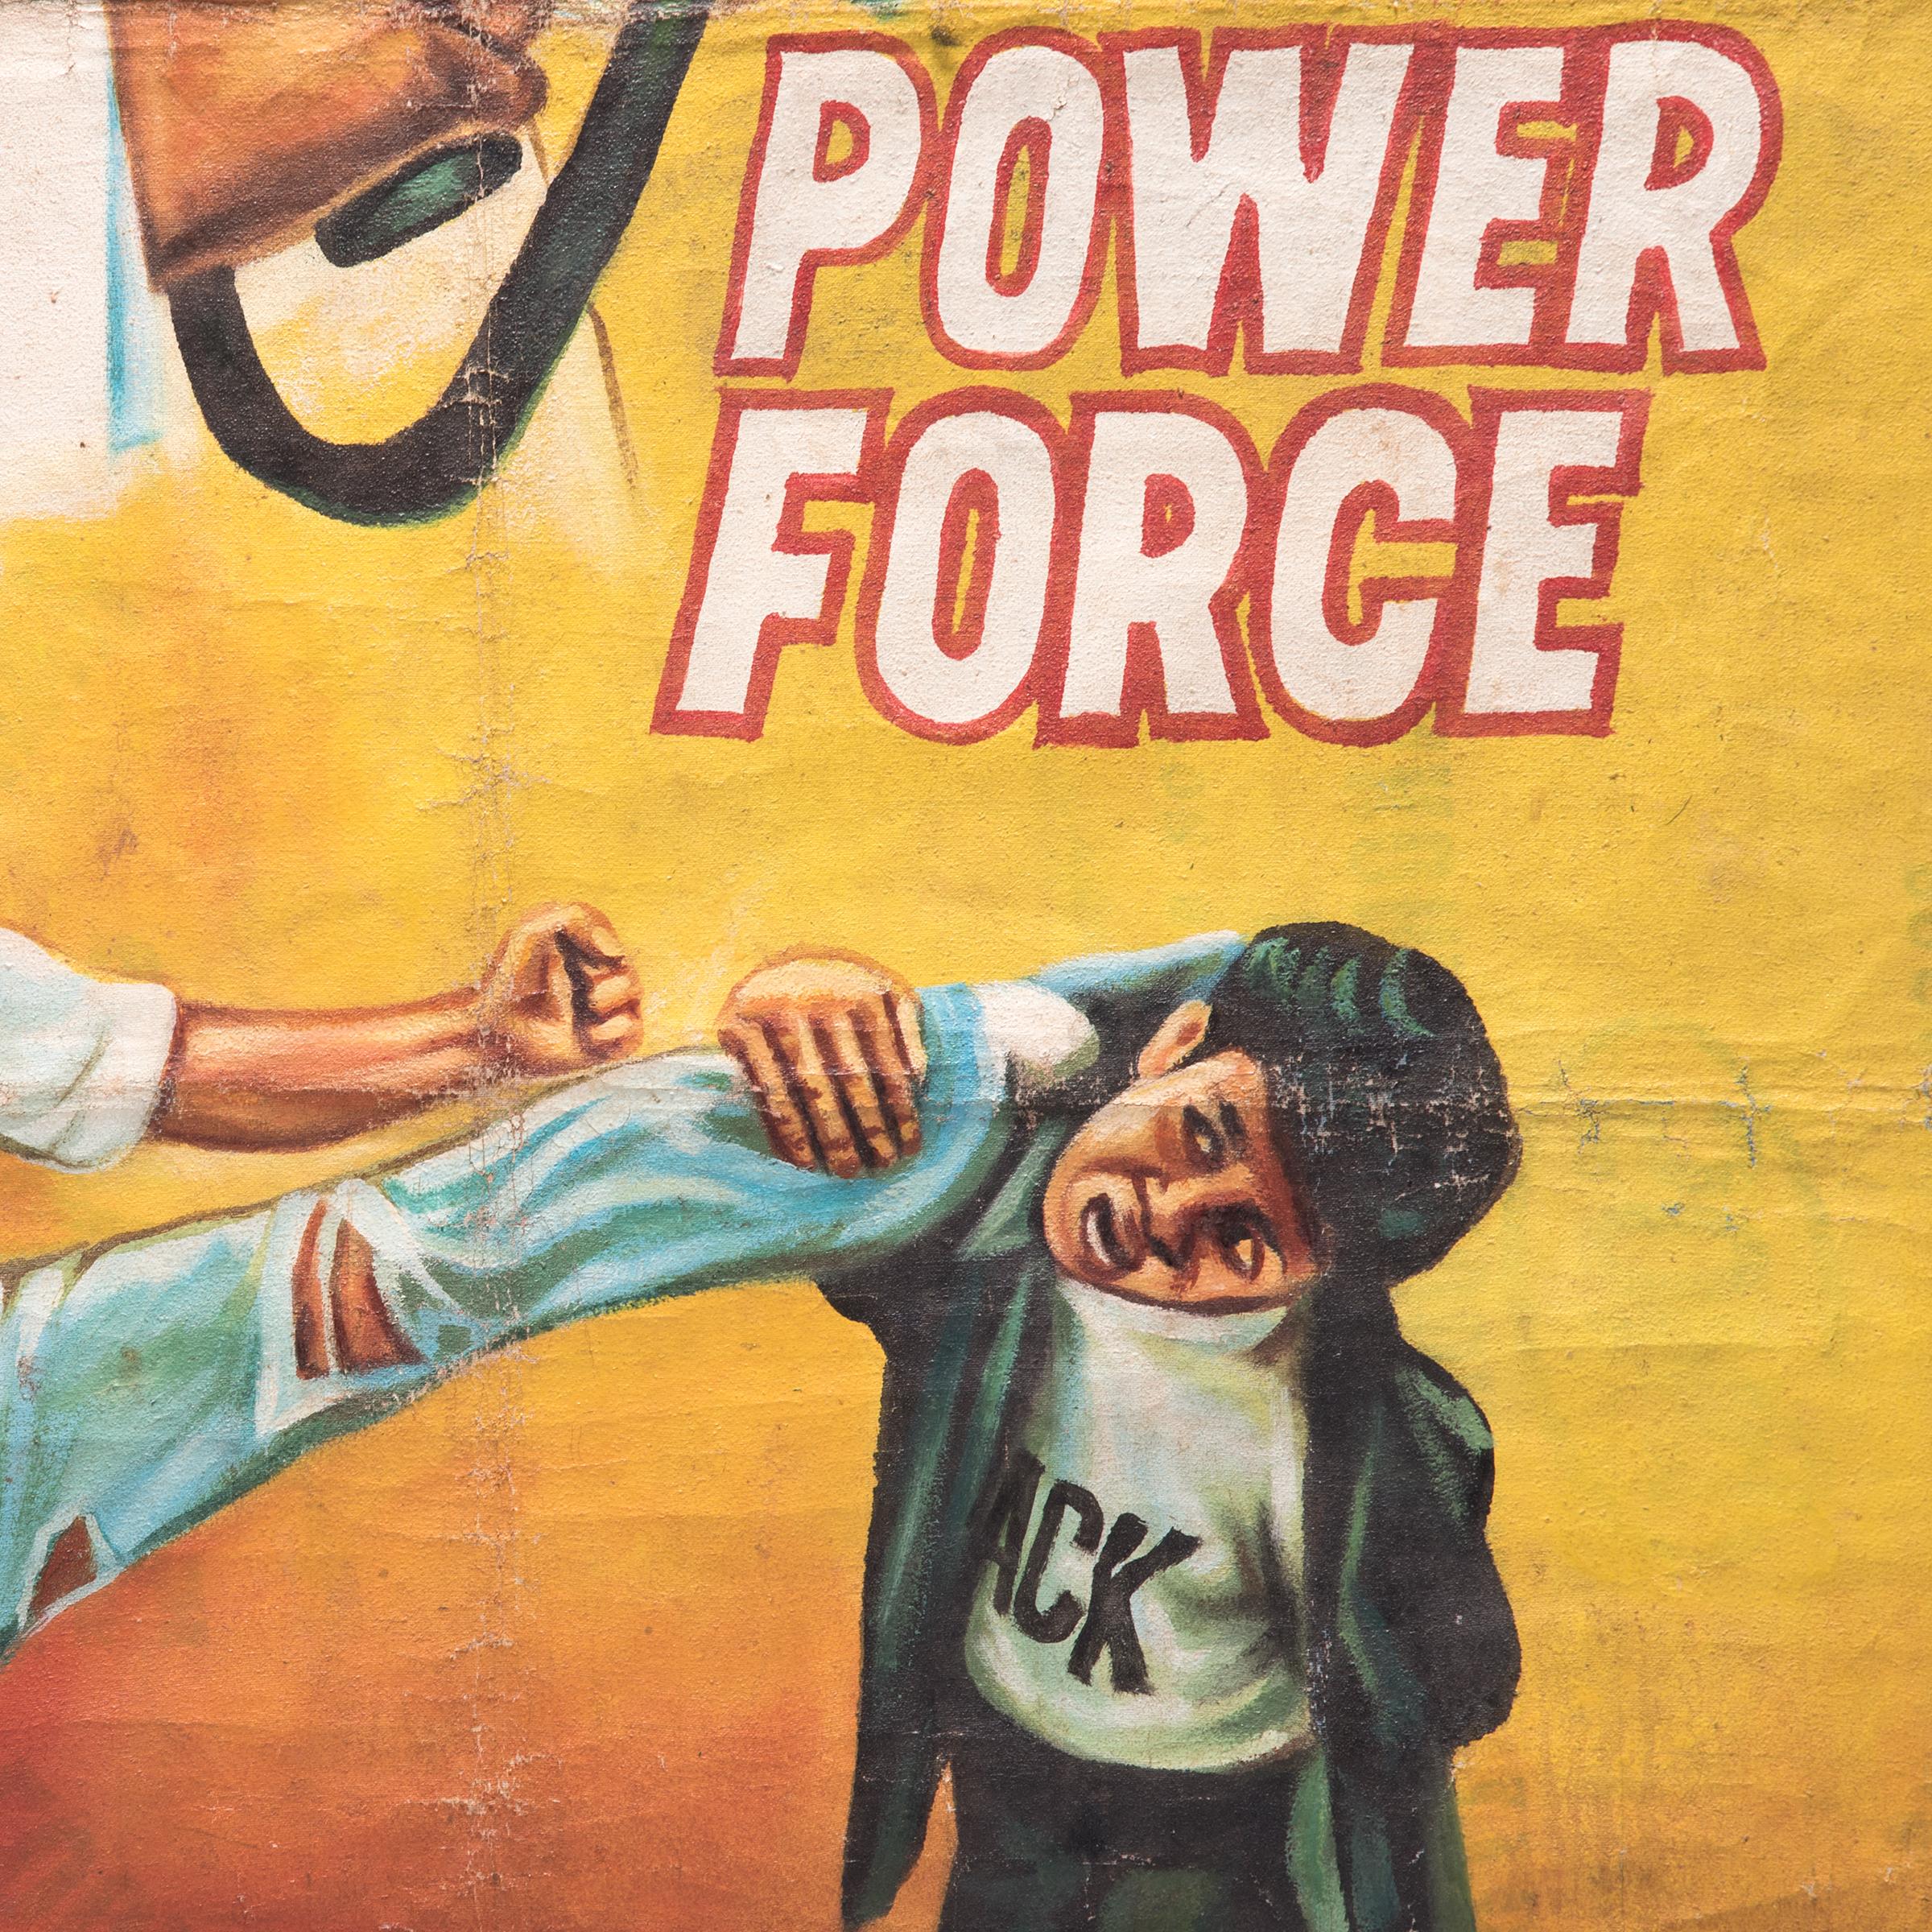 Power Force fue una película de artes marciales estadounidense de 1991. Estaba protagonizada por Alphonse Beni, una estrella de cine nacida en Camerún, en el papel de un ninja que lucha contra el crimen. Como a menudo no podían importar carteles